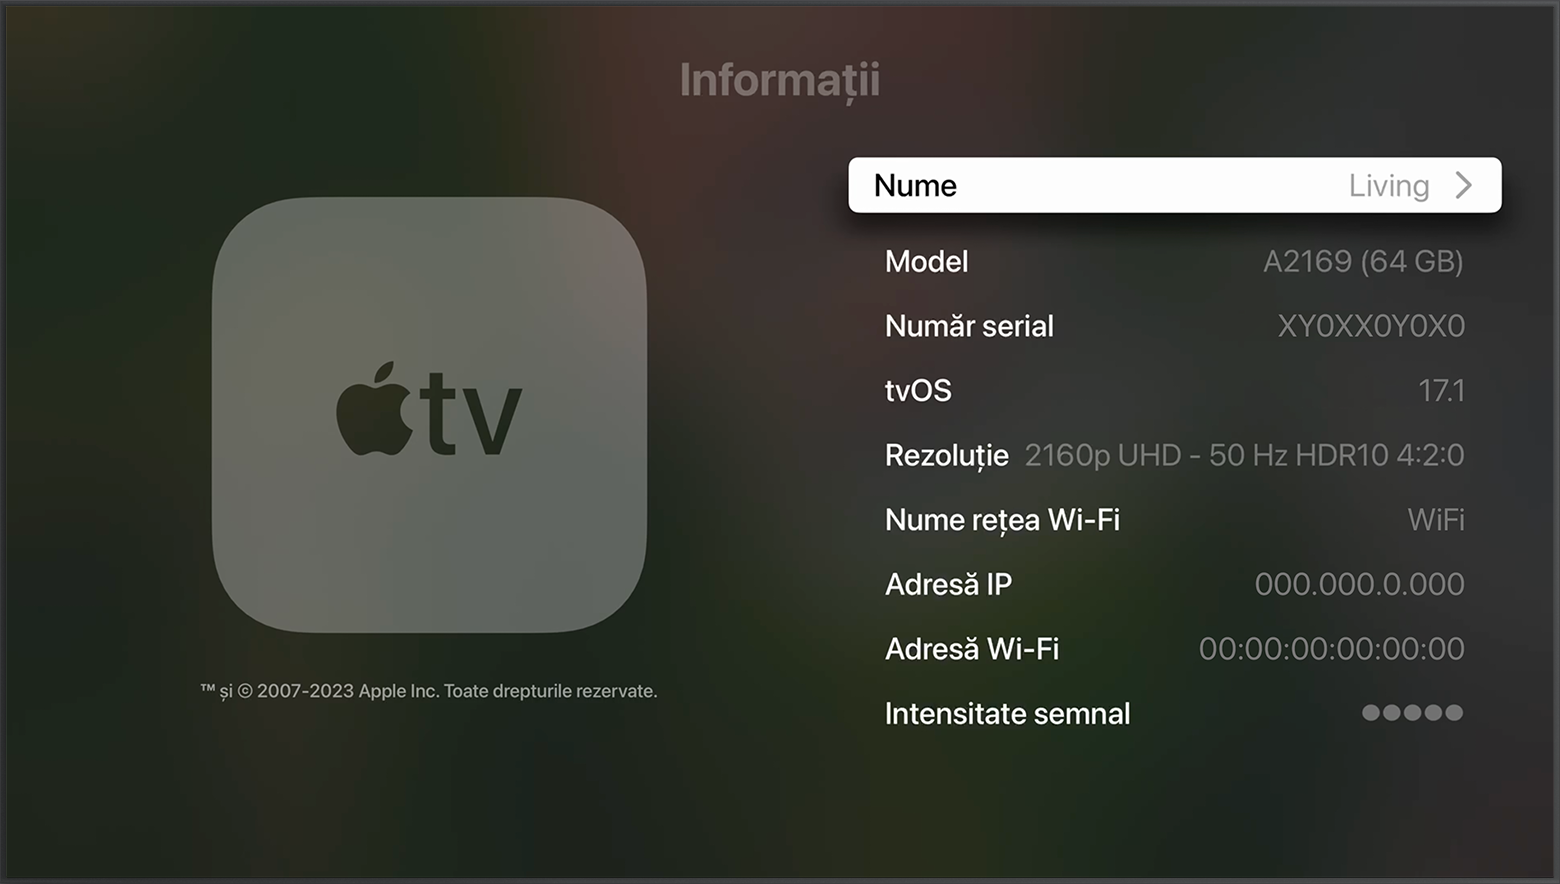 Numărul de serie apare în partea de sus a ecranului Informații pe Apple TV